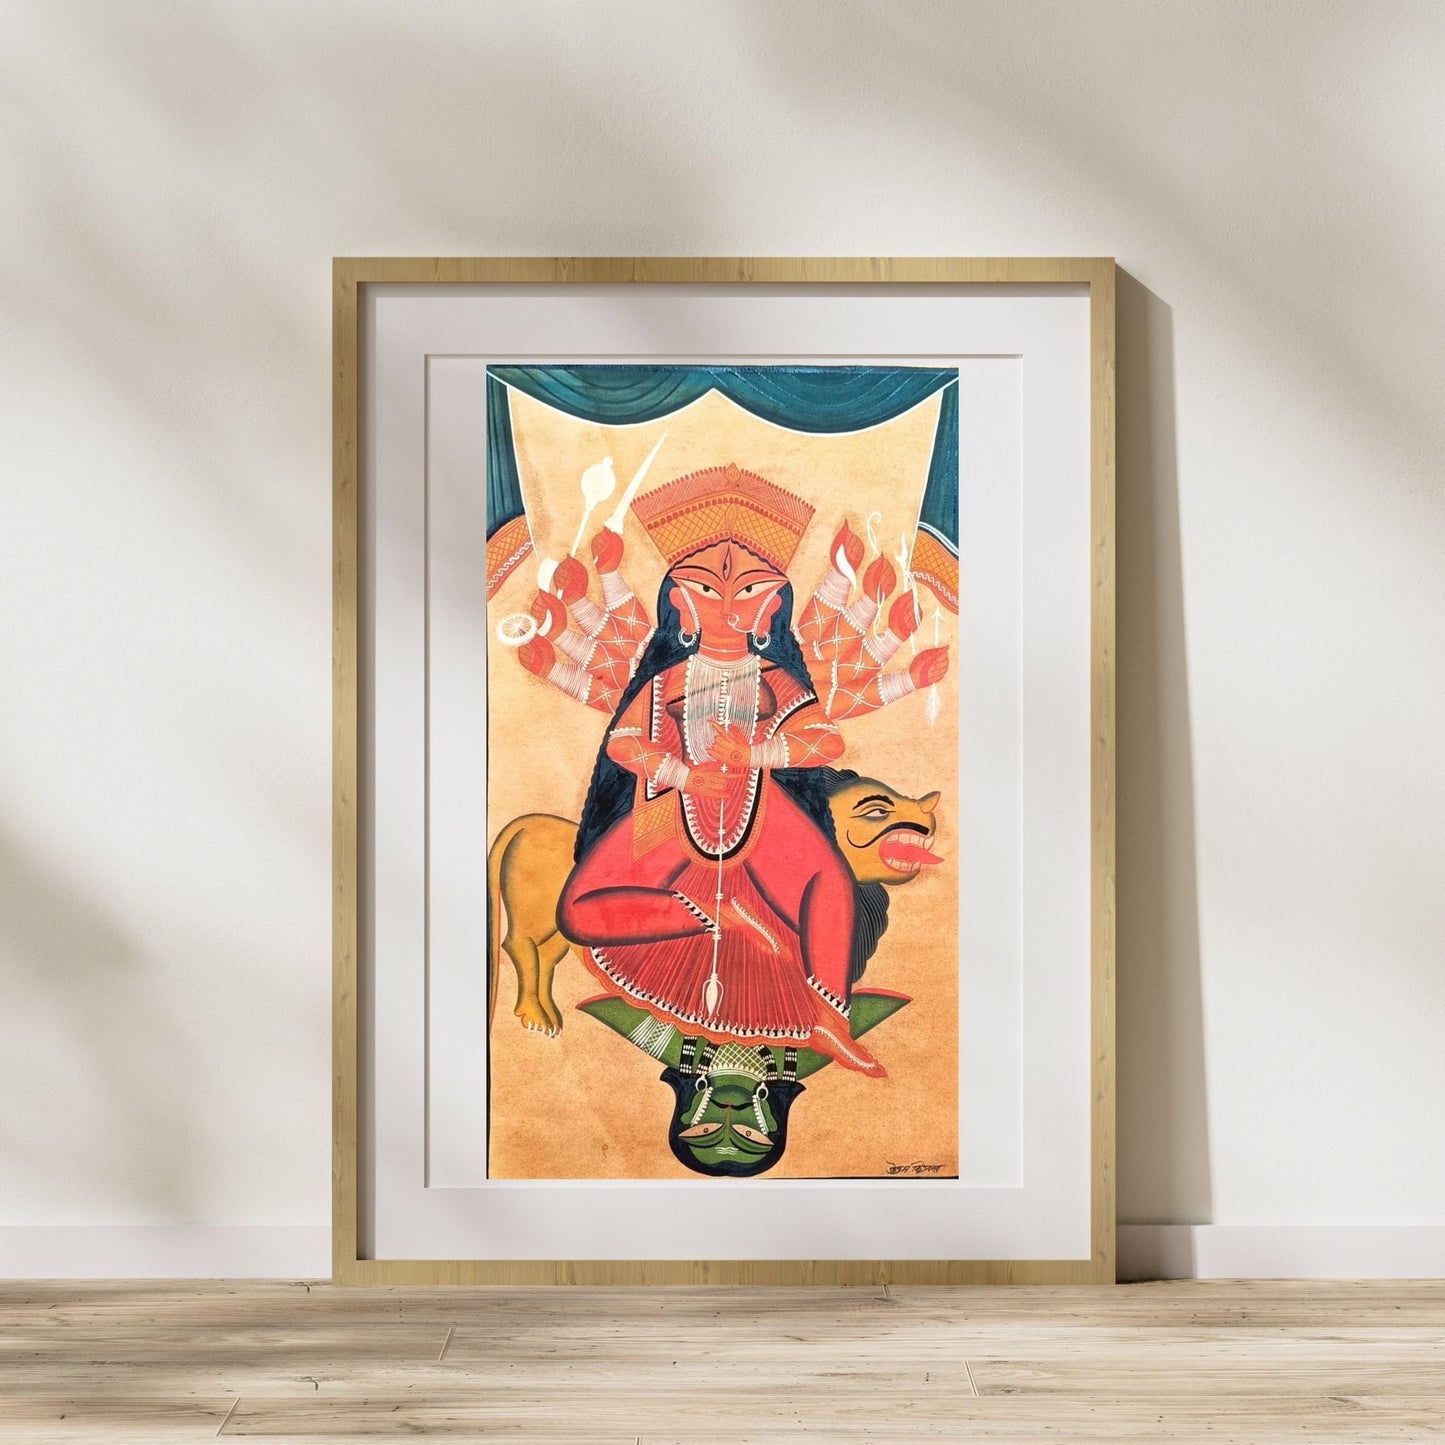 ‘Maa Durga’ by Uttam Chitrakar